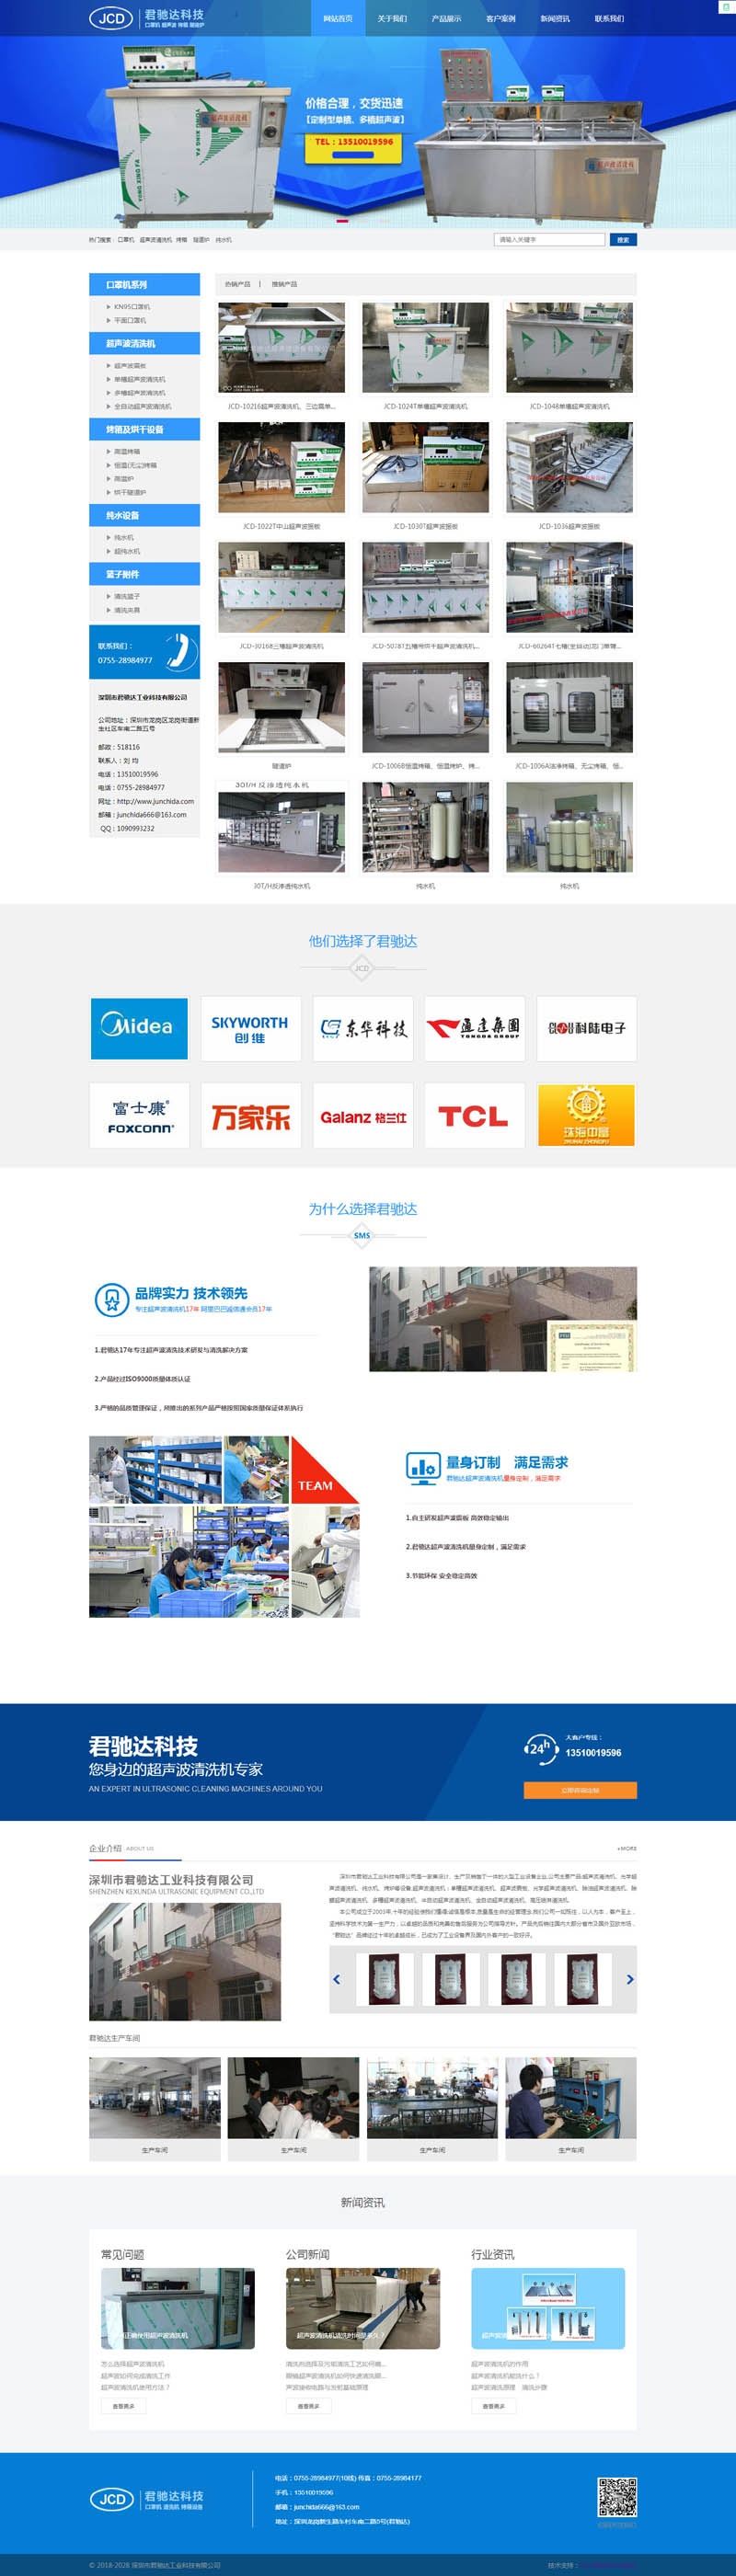 深圳机械设备网站建设案例，君驰达工业科技有限公司